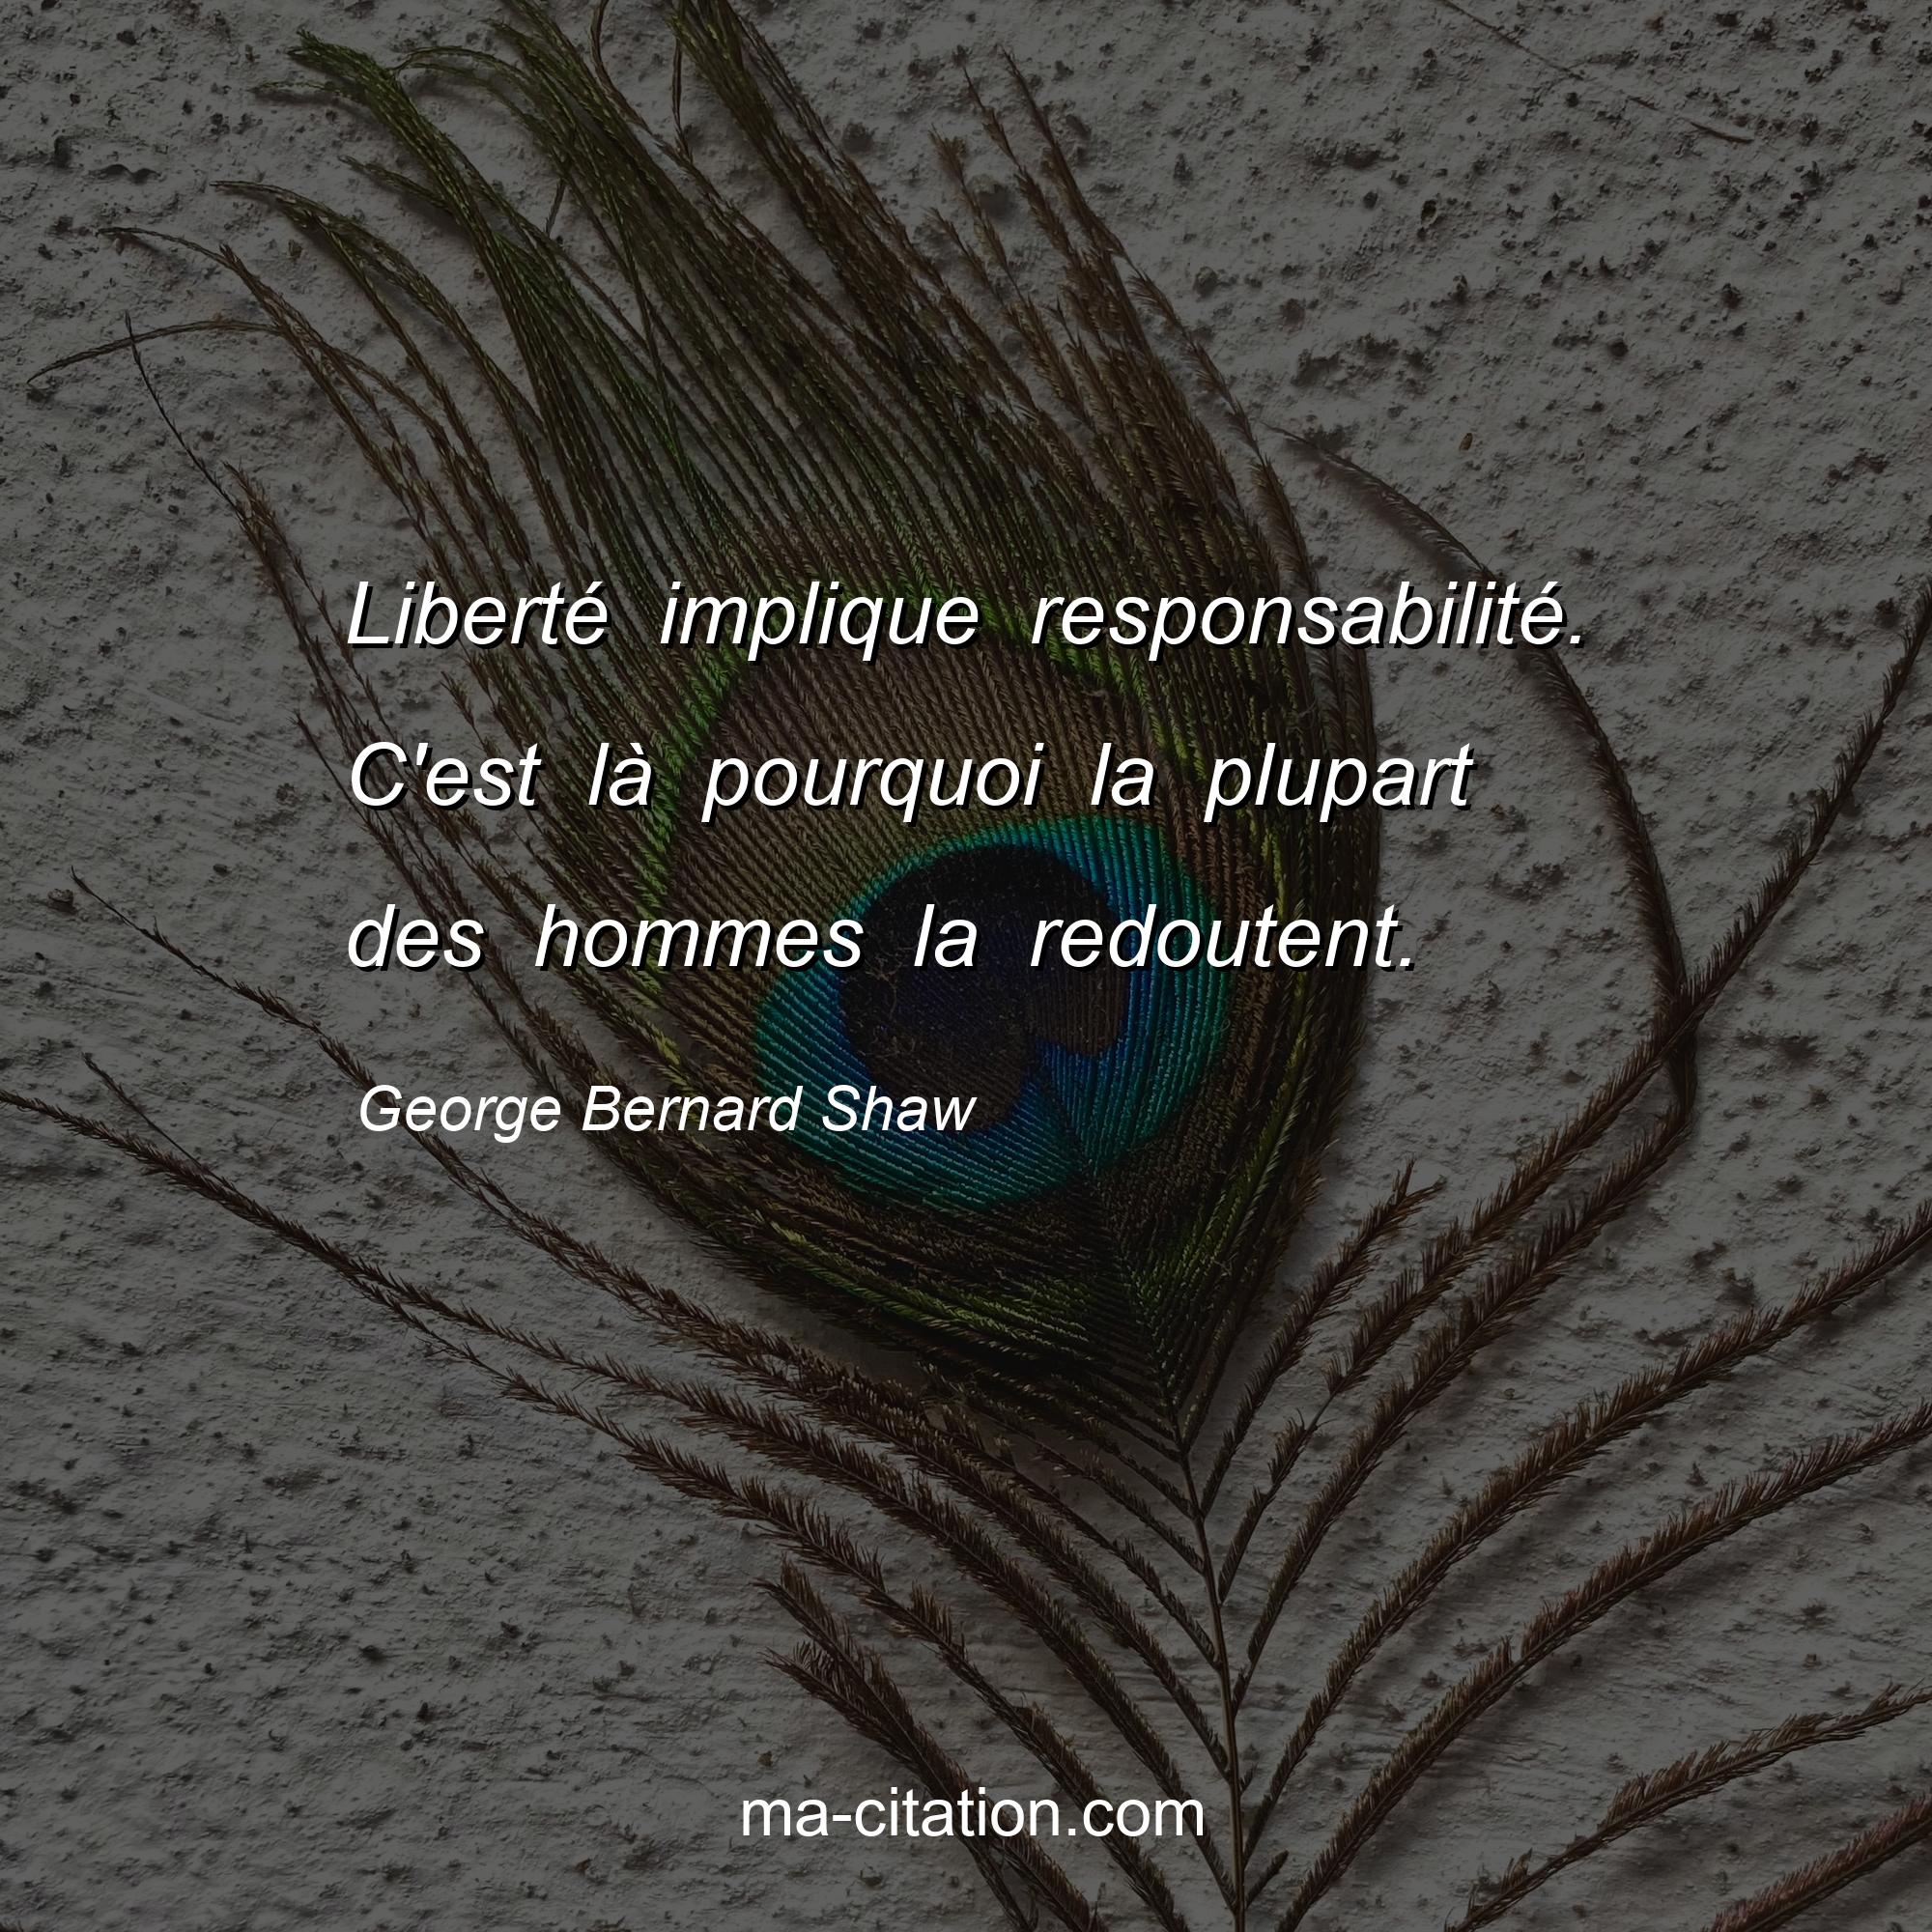 George Bernard Shaw : Liberté implique responsabilité. C'est là pourquoi la plupart des hommes la redoutent.